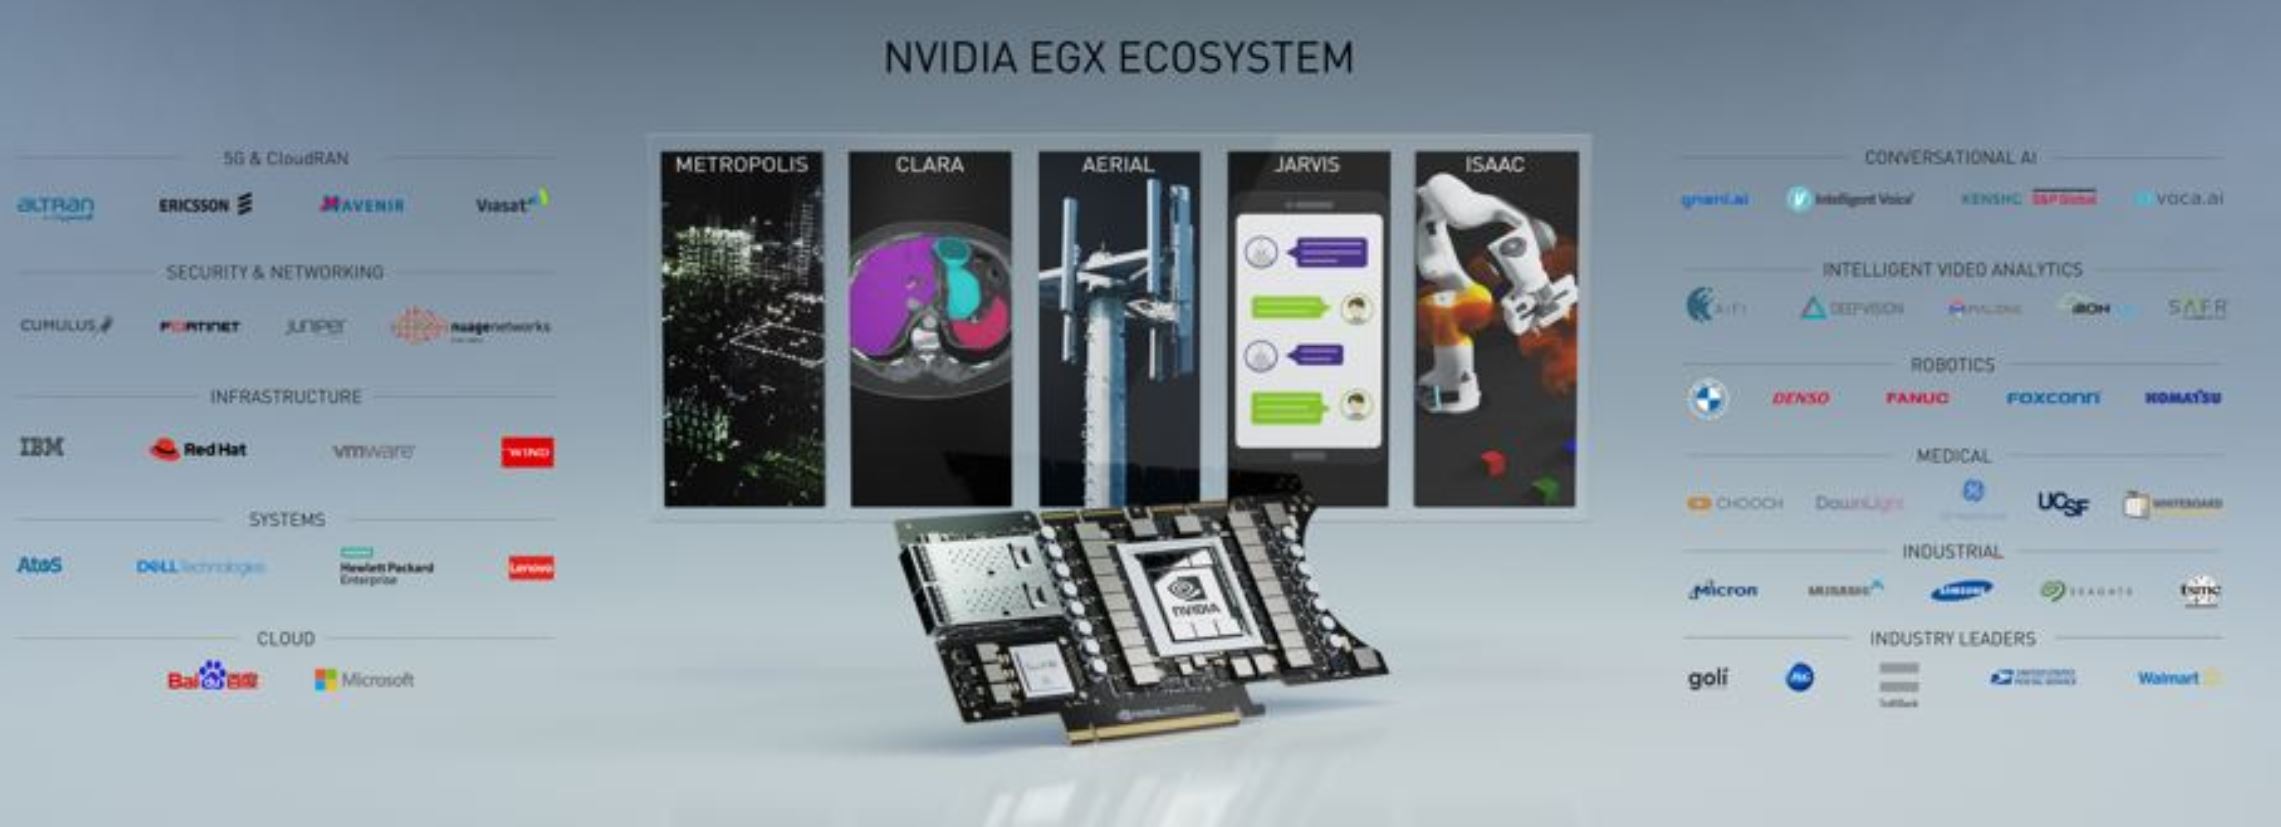 NVDIA EGX A100 Ecosystem